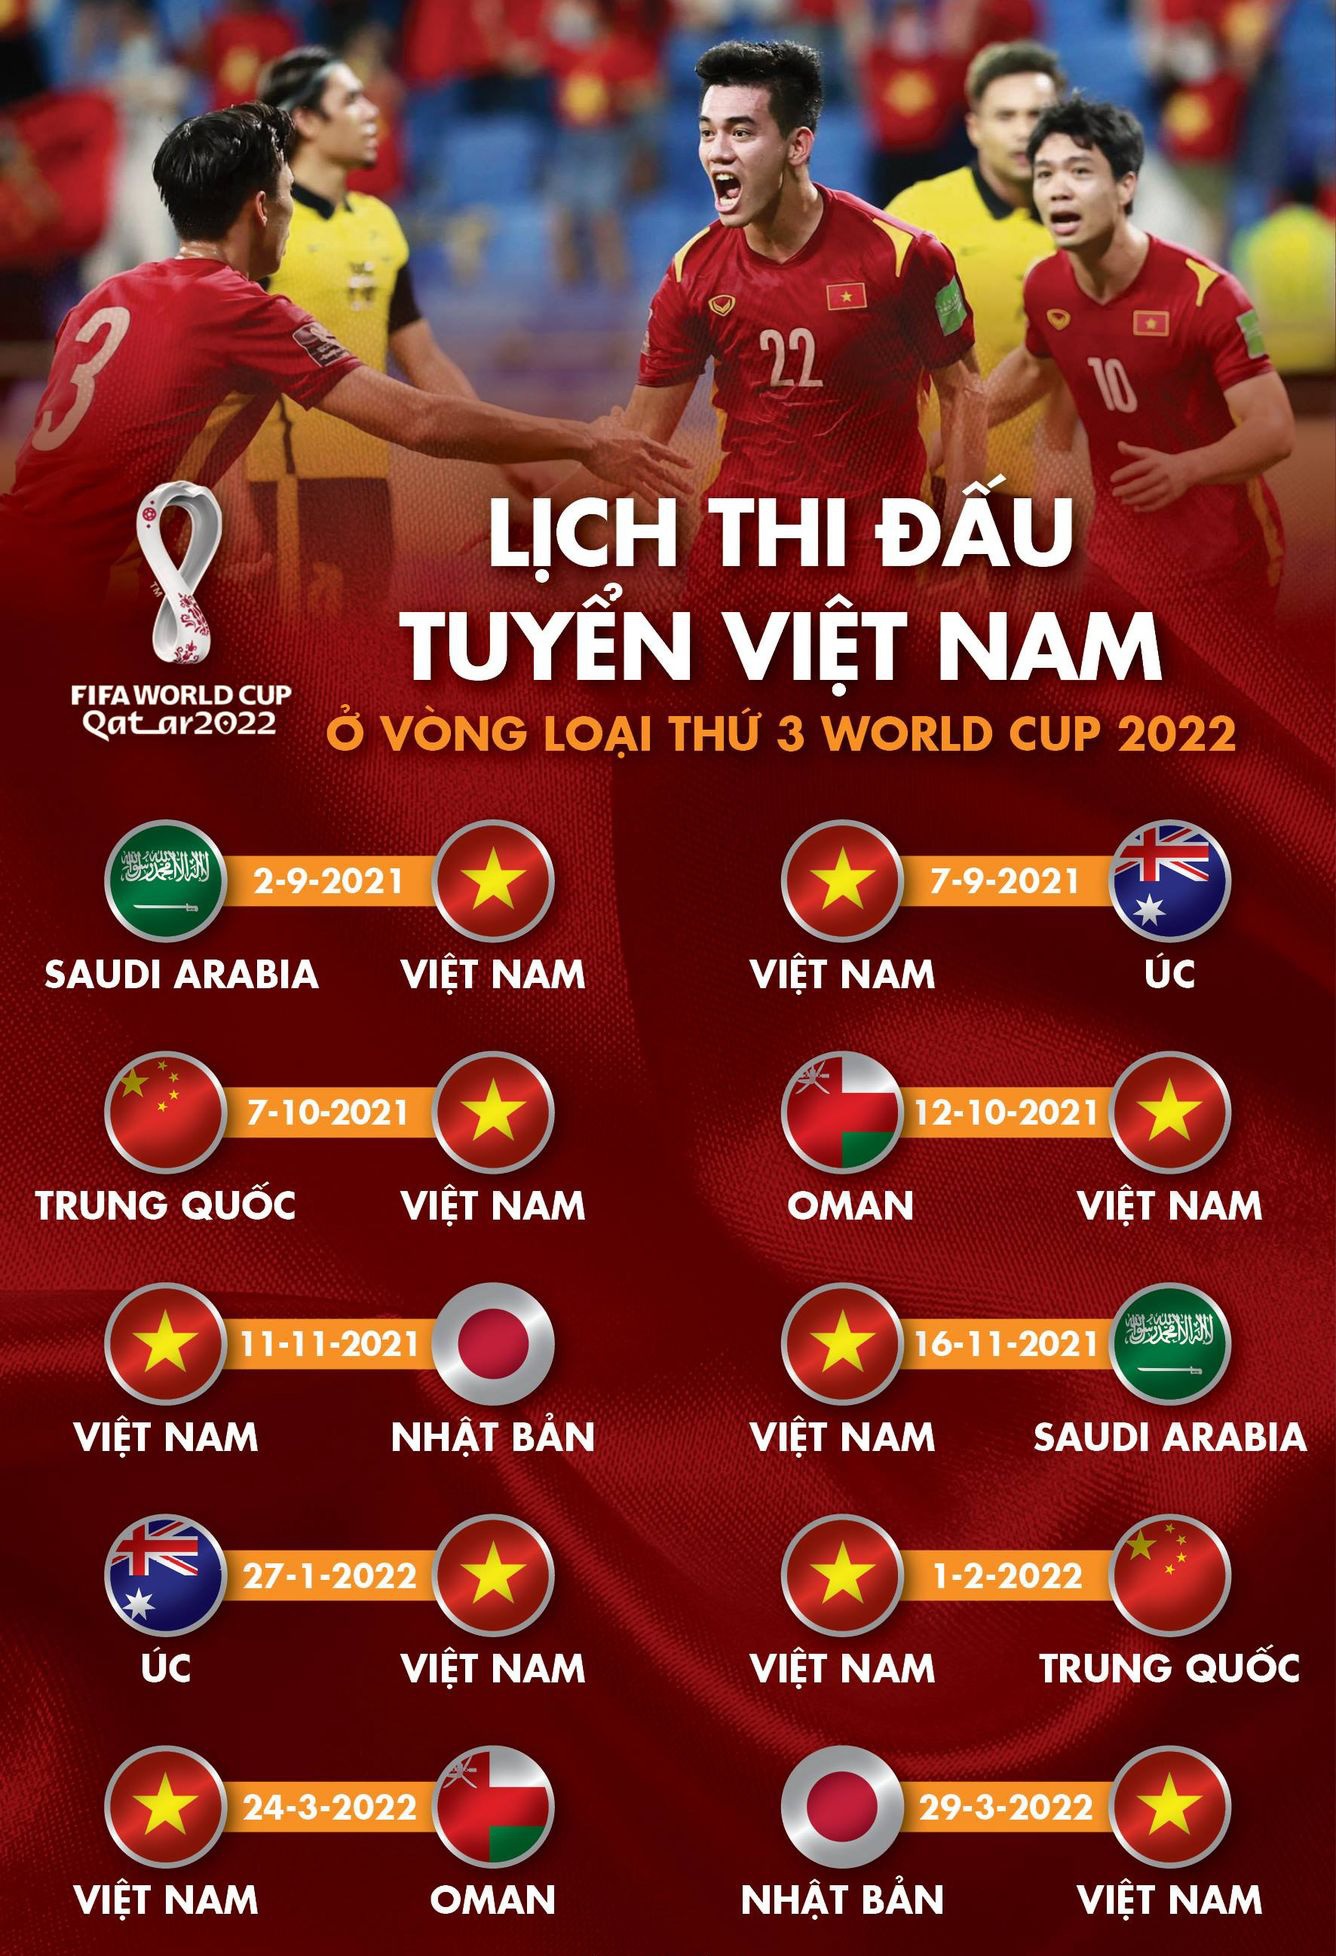 ĐT Việt Nam tạo kỳ tích ở VL World Cup, HLV Park khiêm tốn tiết lộ yếu tố mang tính quyết định